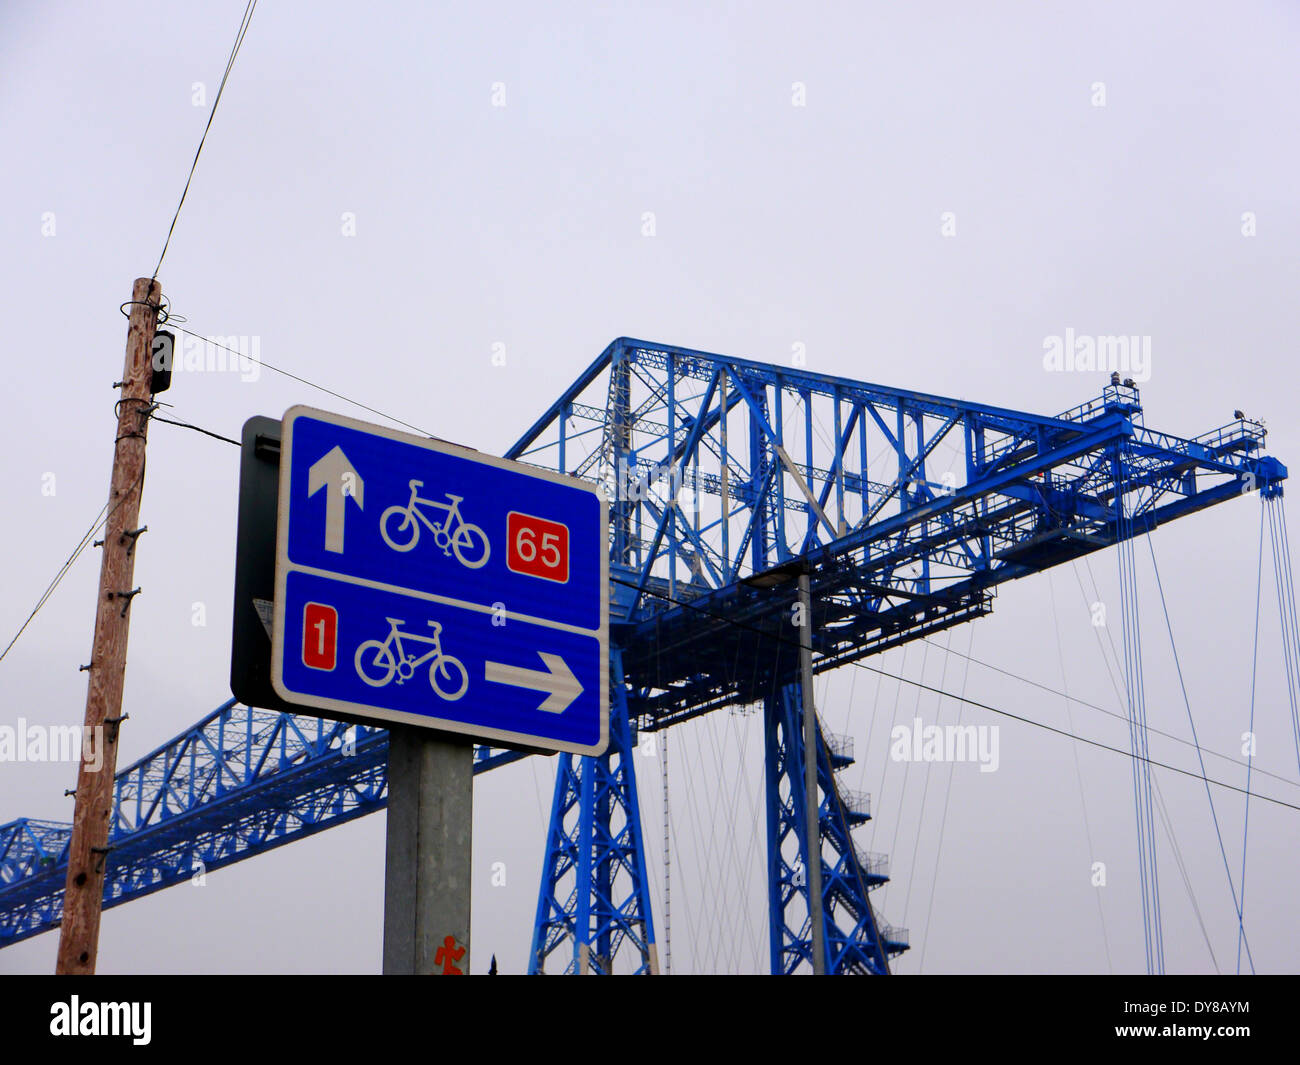 Immagine della storica transporter bridge a Middlehaven, Middlesbrough, Teesside, UK, industriale di attraversamento Fiume Tees Foto Stock